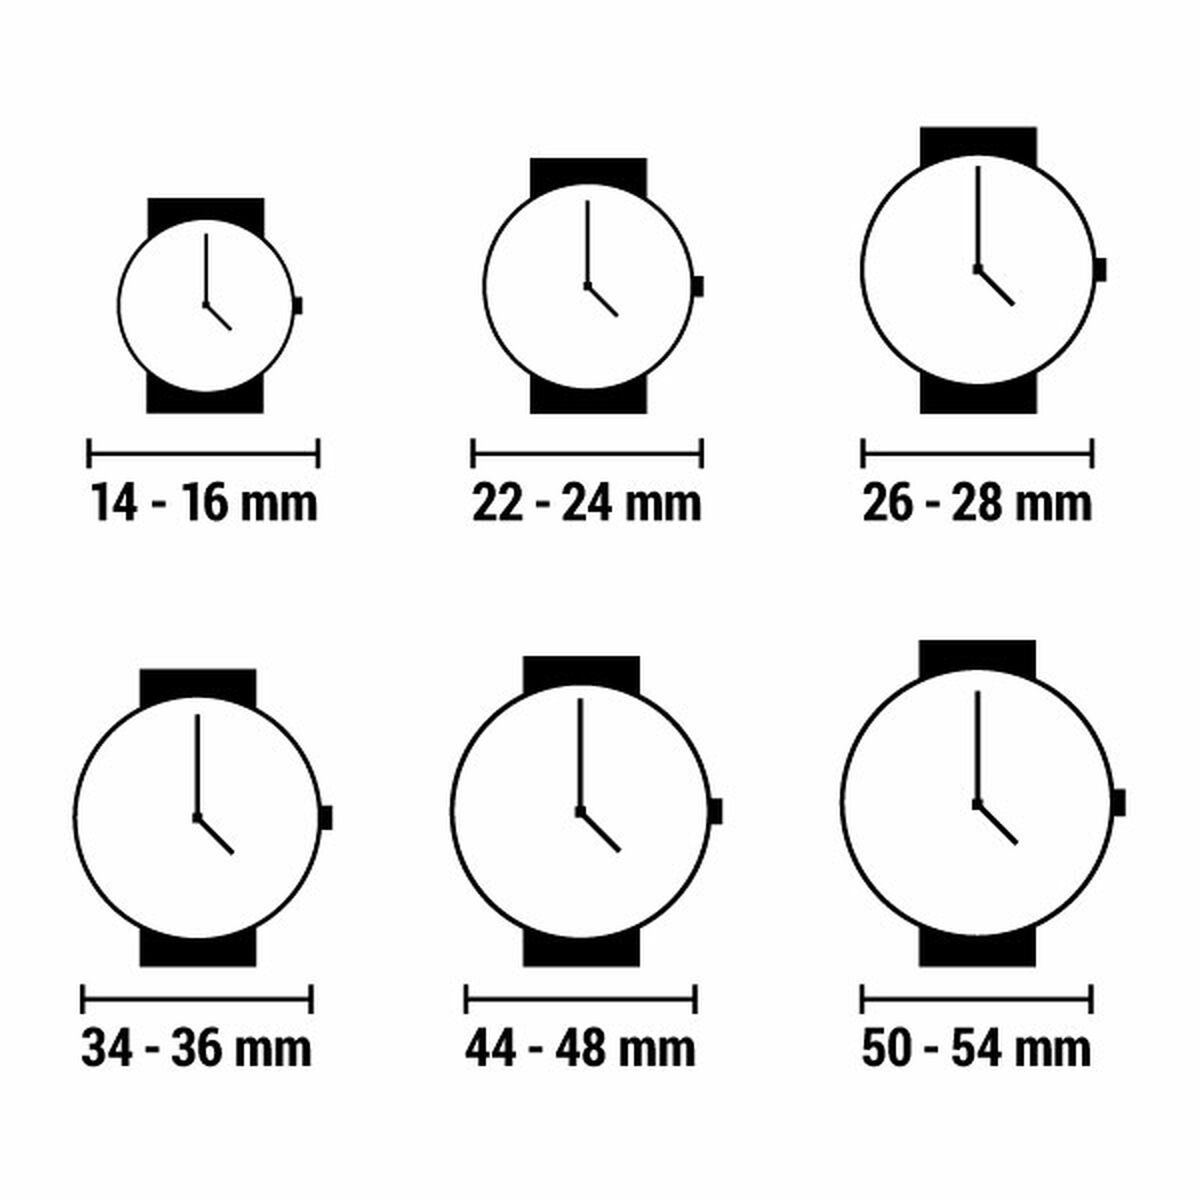 Horloge Dames Radiant RA545201 (Ø 36 mm)